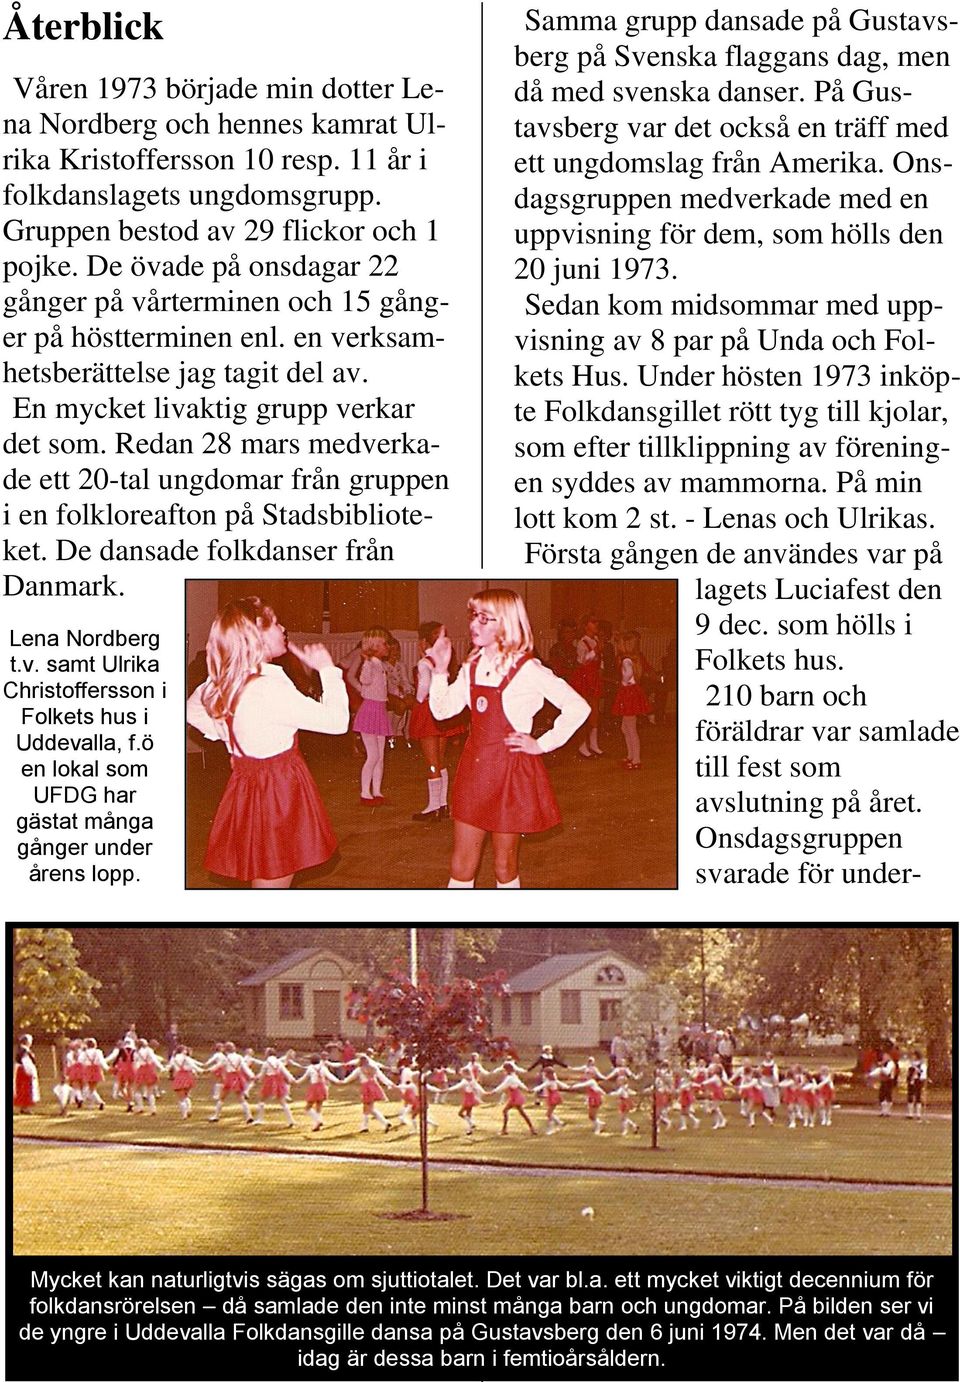 Redan 28 mars medverkade ett 20-tal ungdomar från gruppen i en folkloreafton på Stadsbiblioteket. De dansade folkdanser från Danmark. Lena Nordberg t.v. samt Ulrika Christoffersson i Folkets hus i Uddevalla, f.